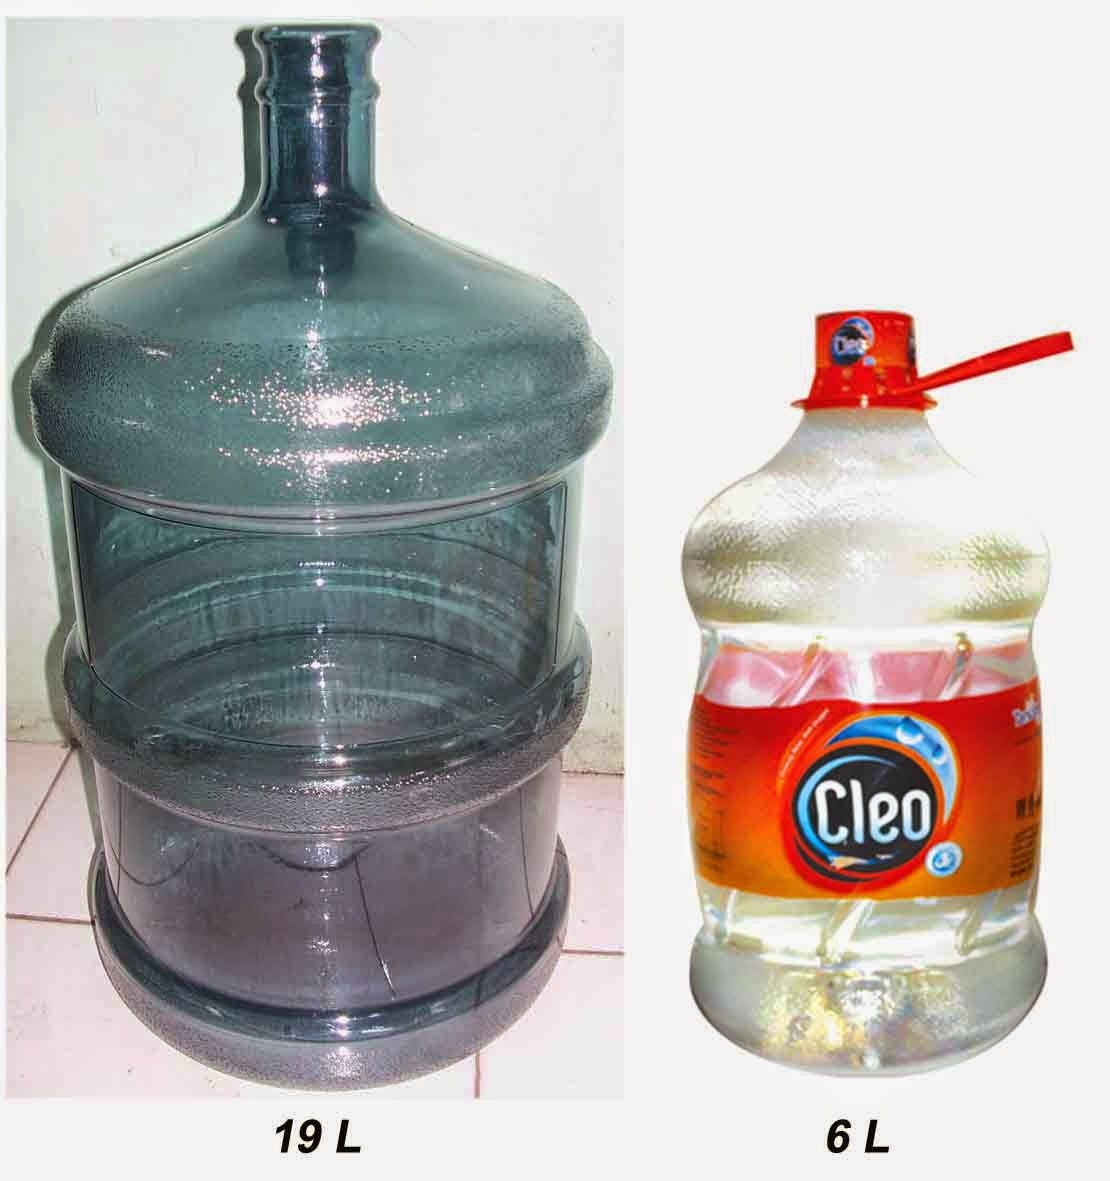 ALDIS Membuat essential oil separator dari bekas botol  